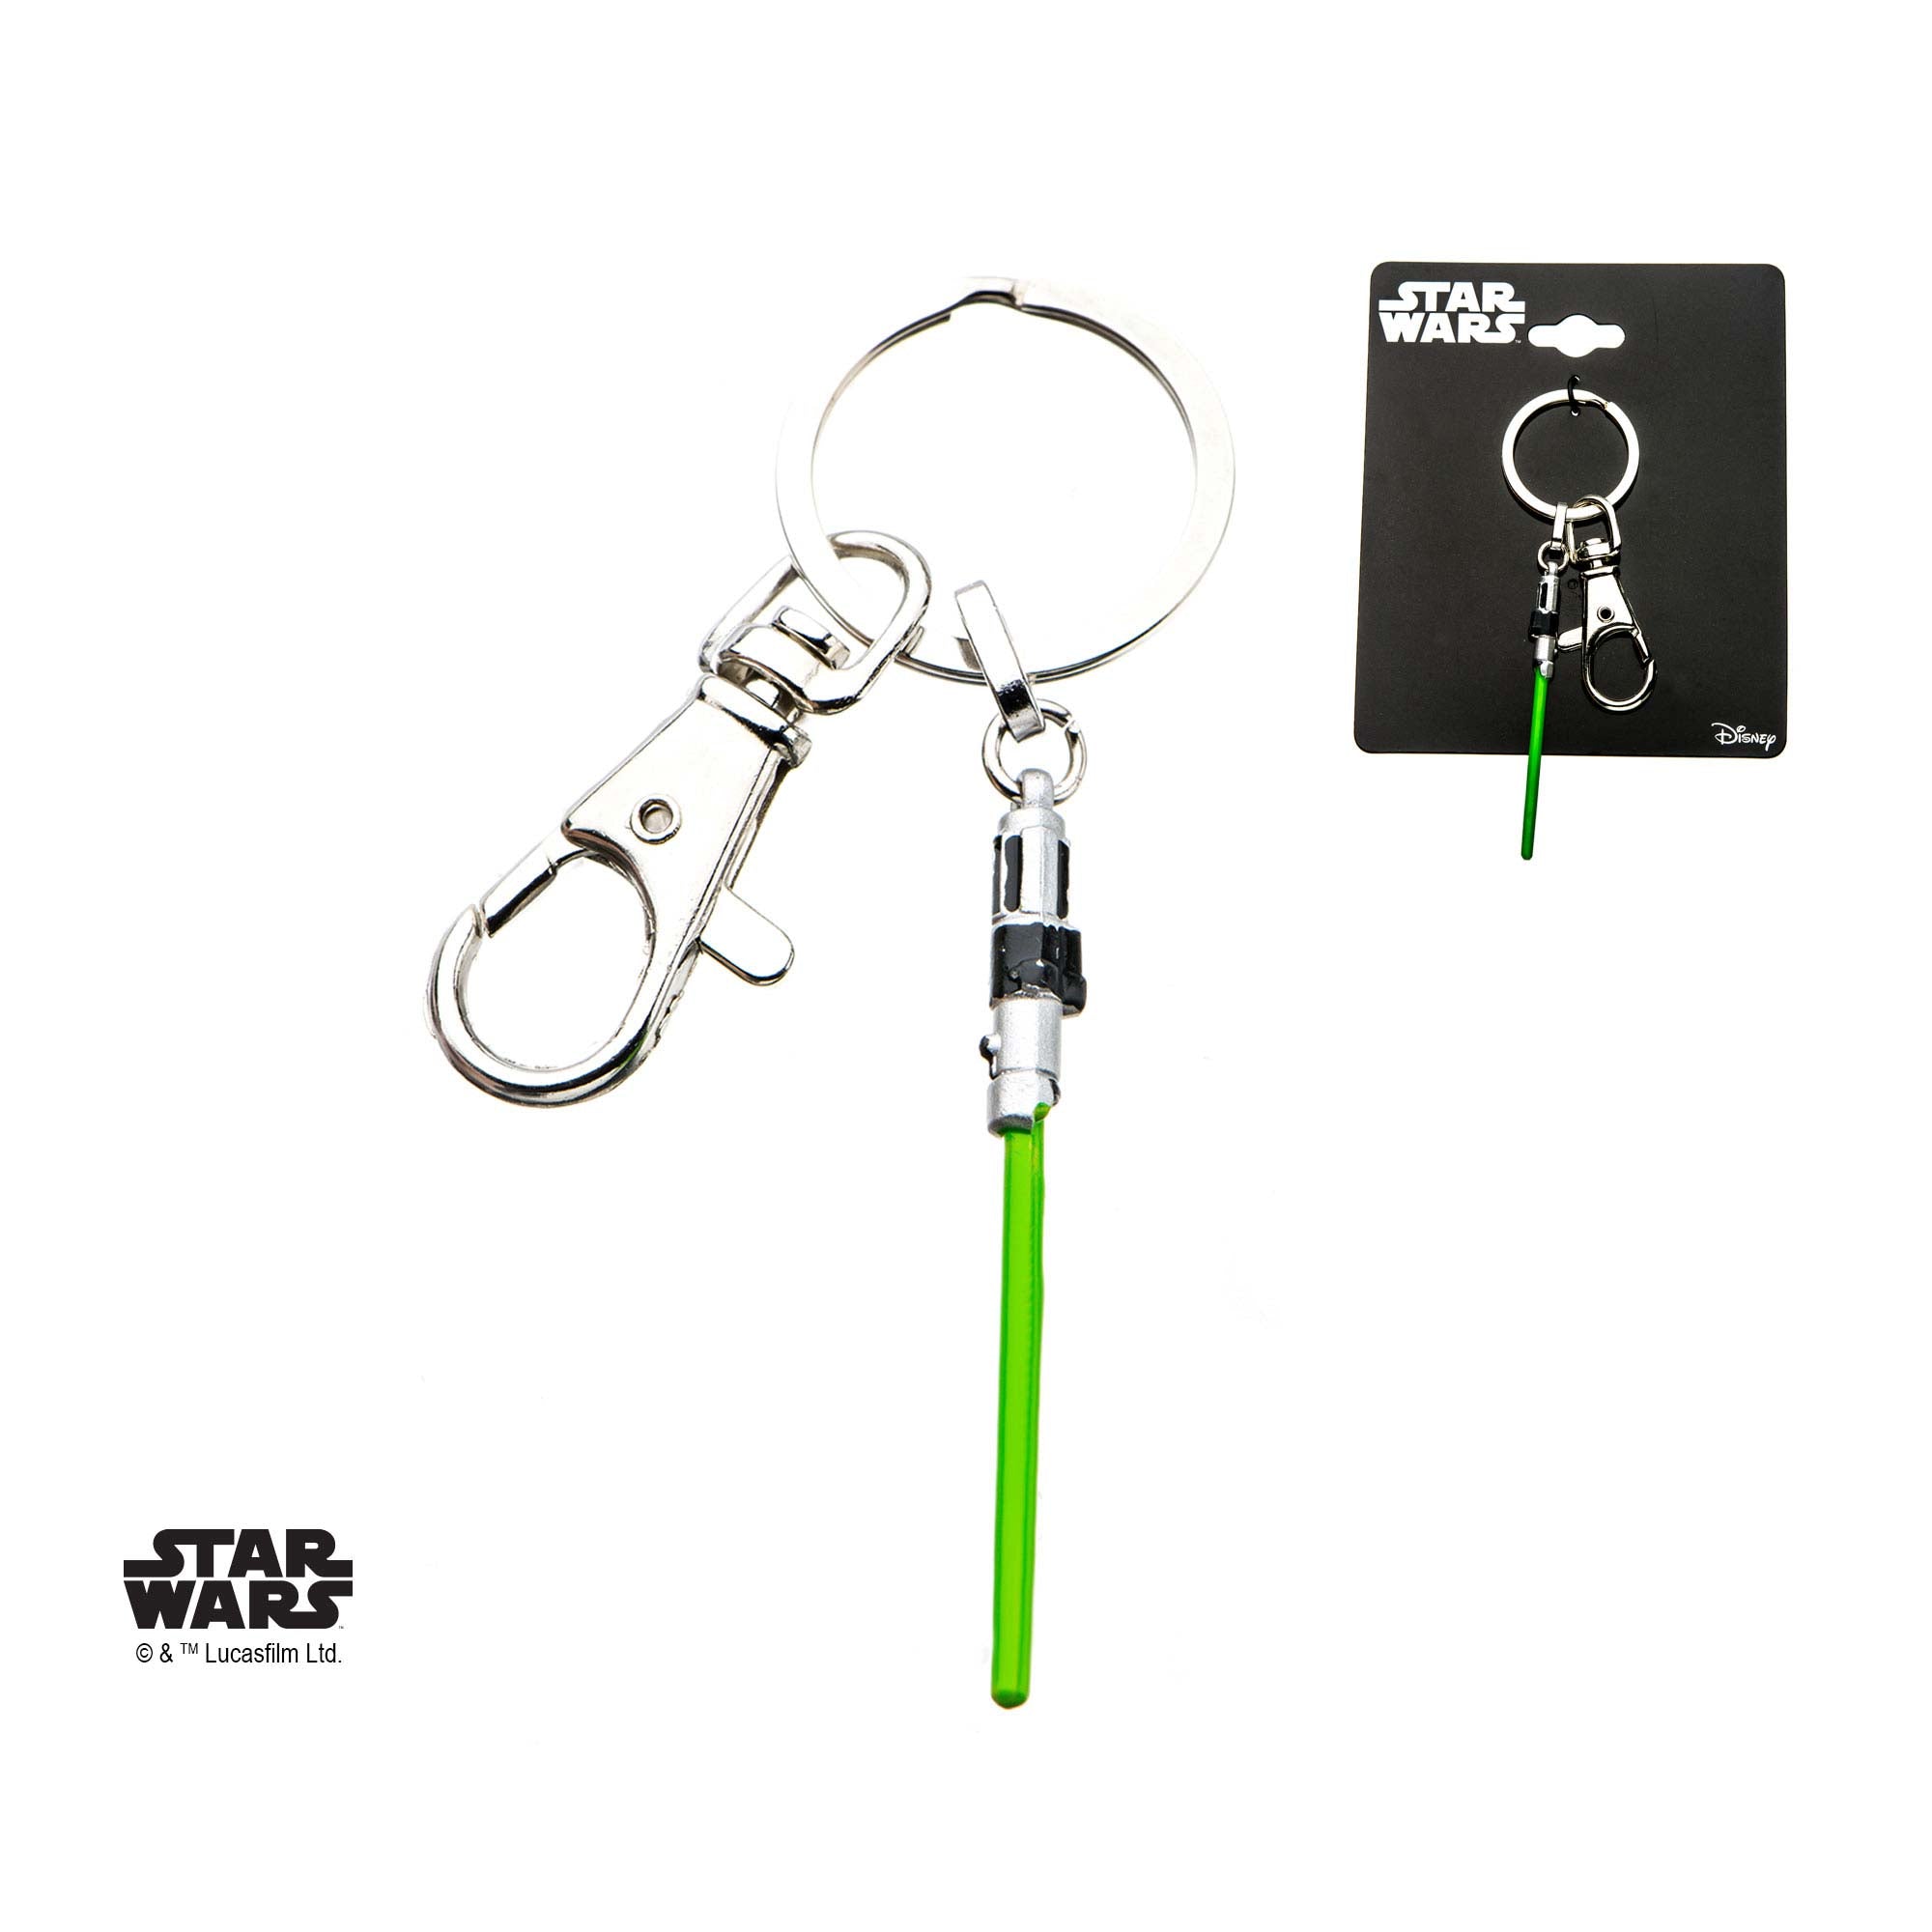 Star Wars Yoda Lightsaber Key Chain